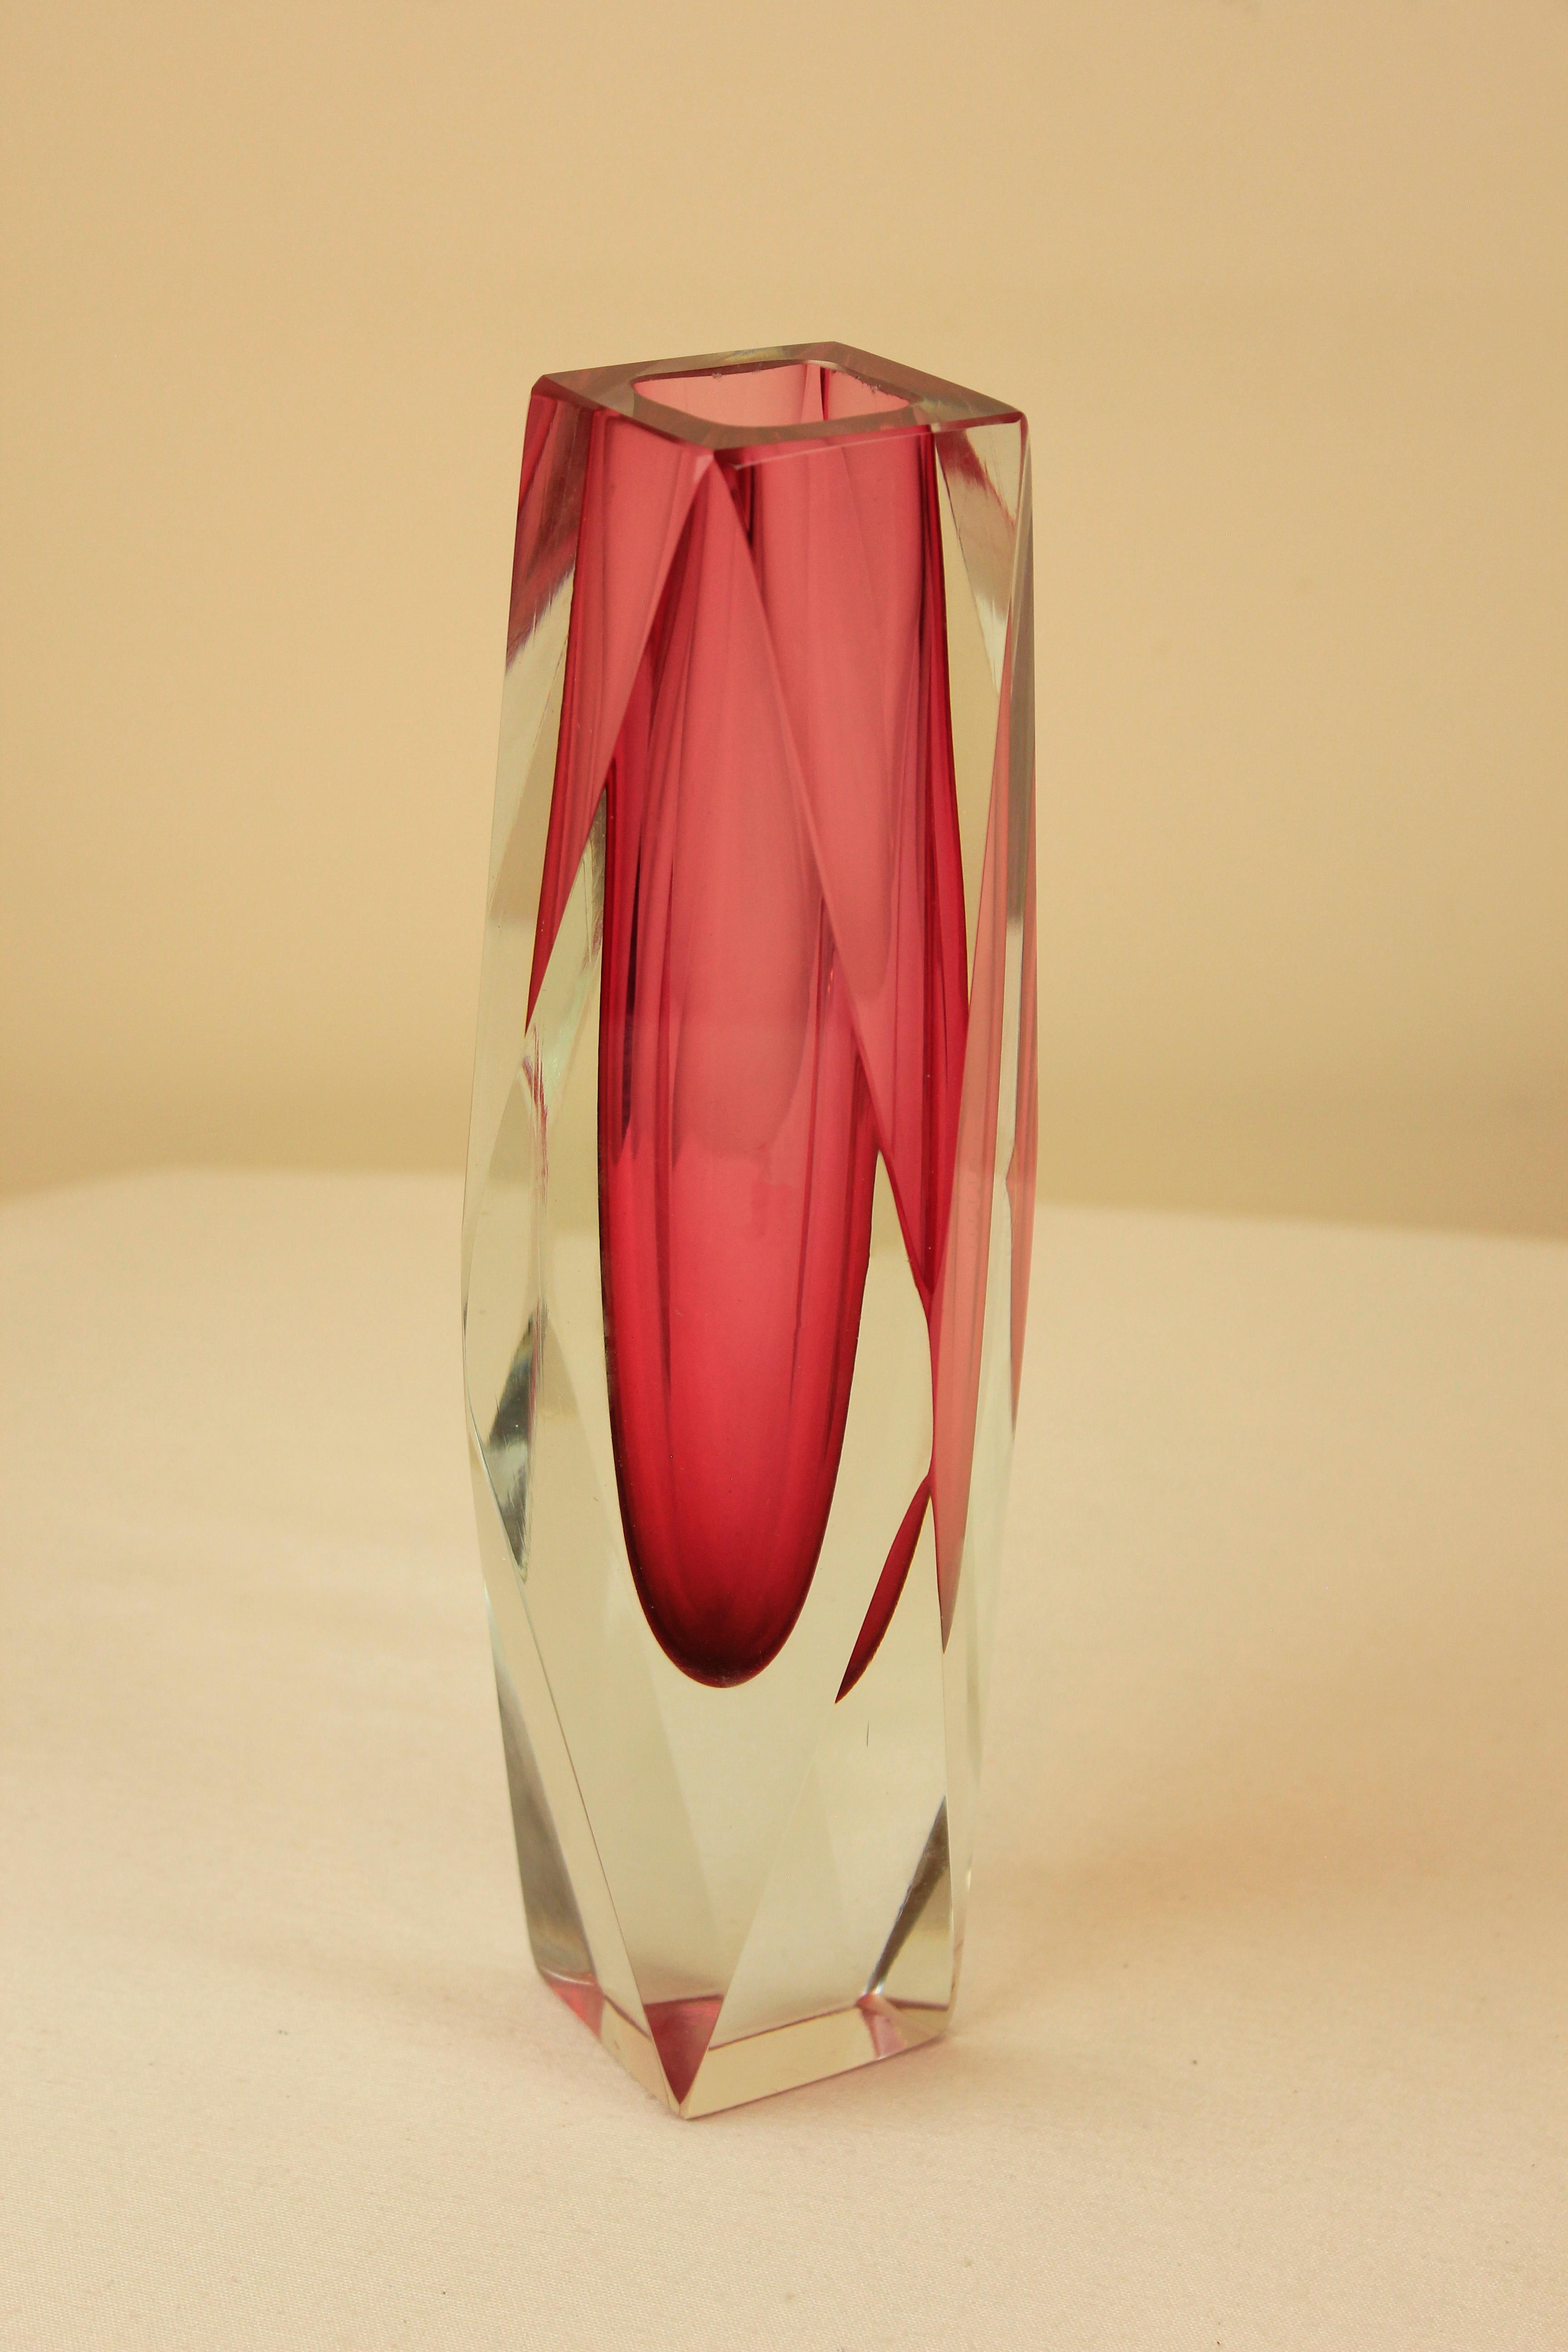 20th Century Pink Murano Mandruzzato Vase For Sale